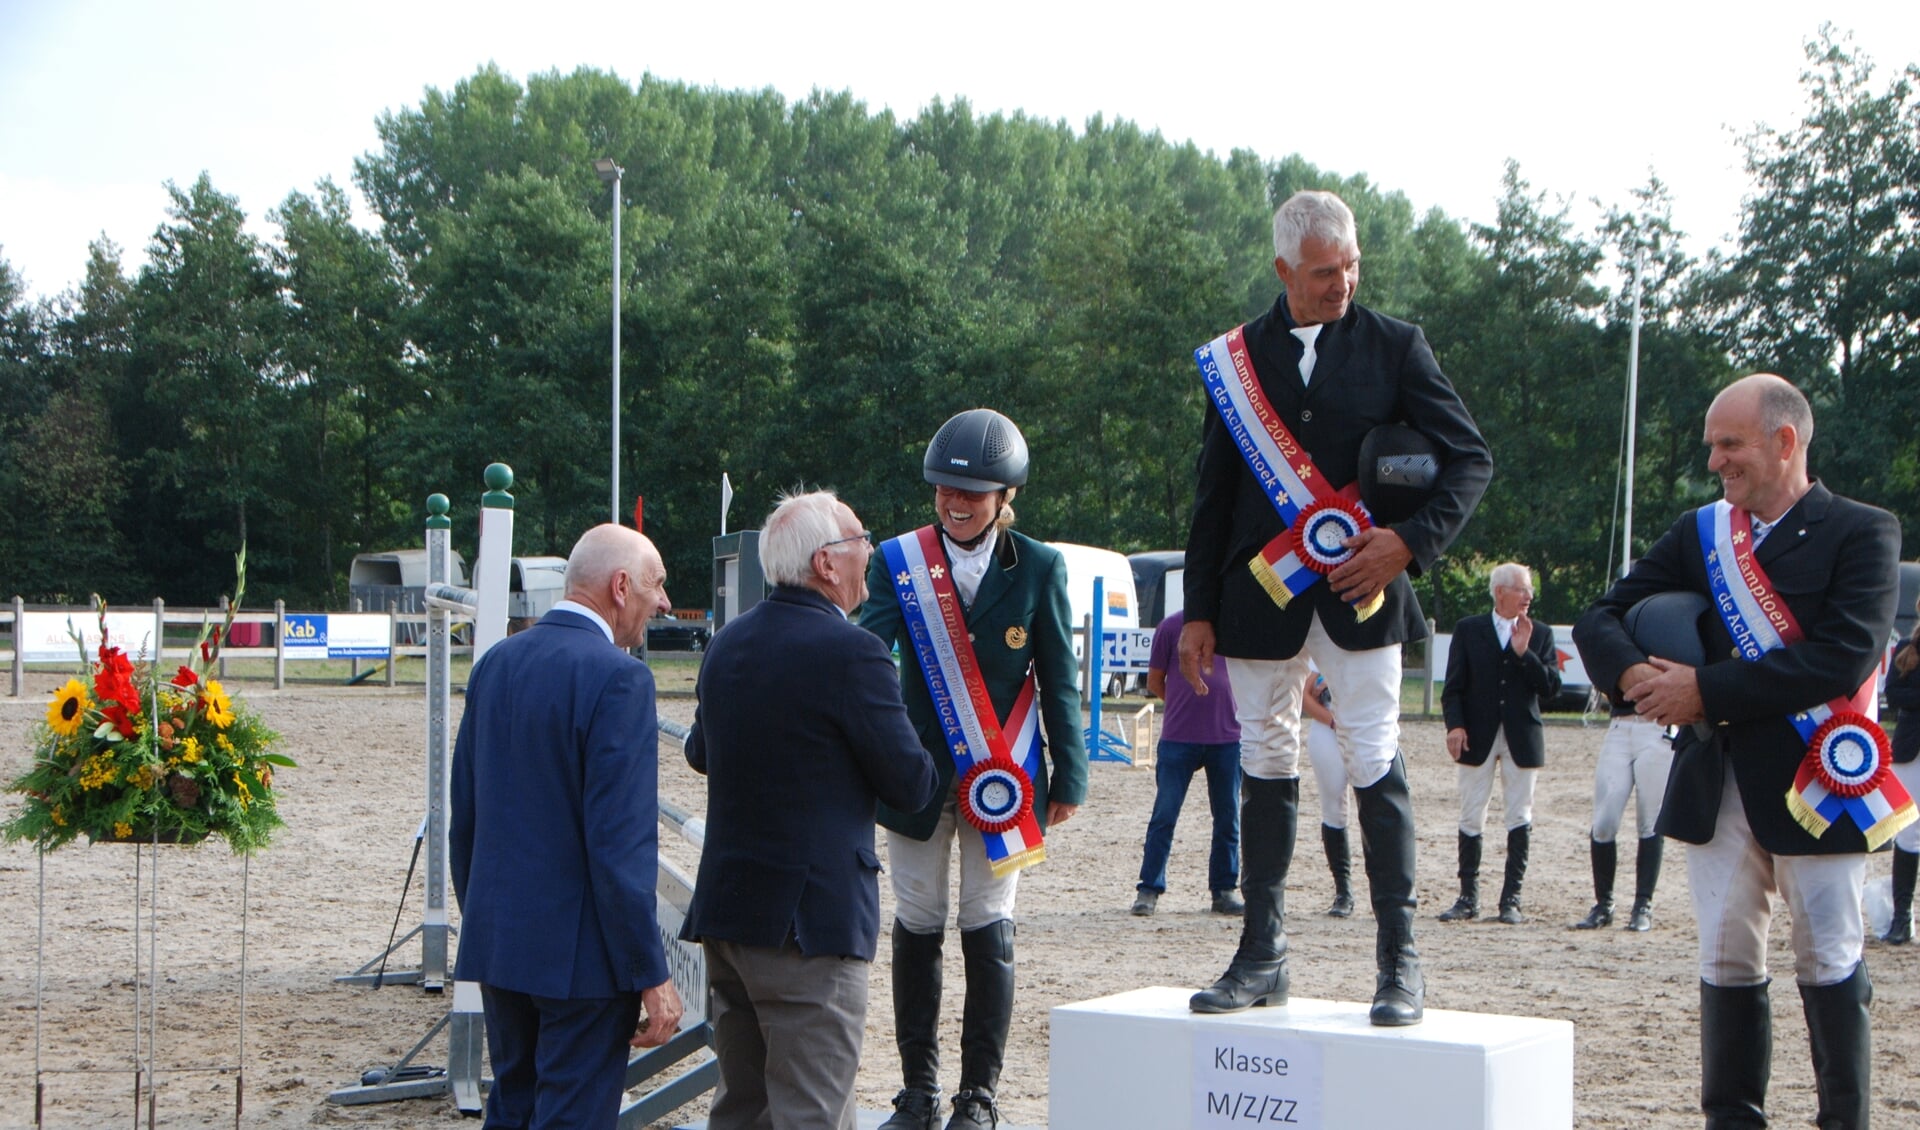 De juryleden Bretveld (links) en Van Zadelhoff feliciteren de kampioenen v.l.n.r. Hylkema, Winkoop en Harmelink. 